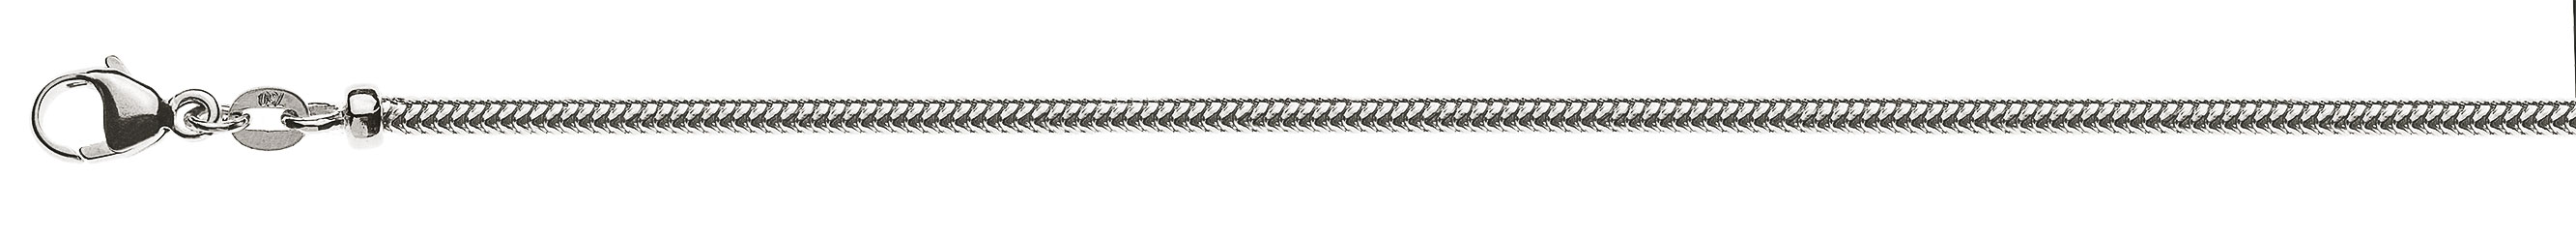 AURONOS Prestige Collier en or blanc 18K chaîne serpent 42cm 2.4mm